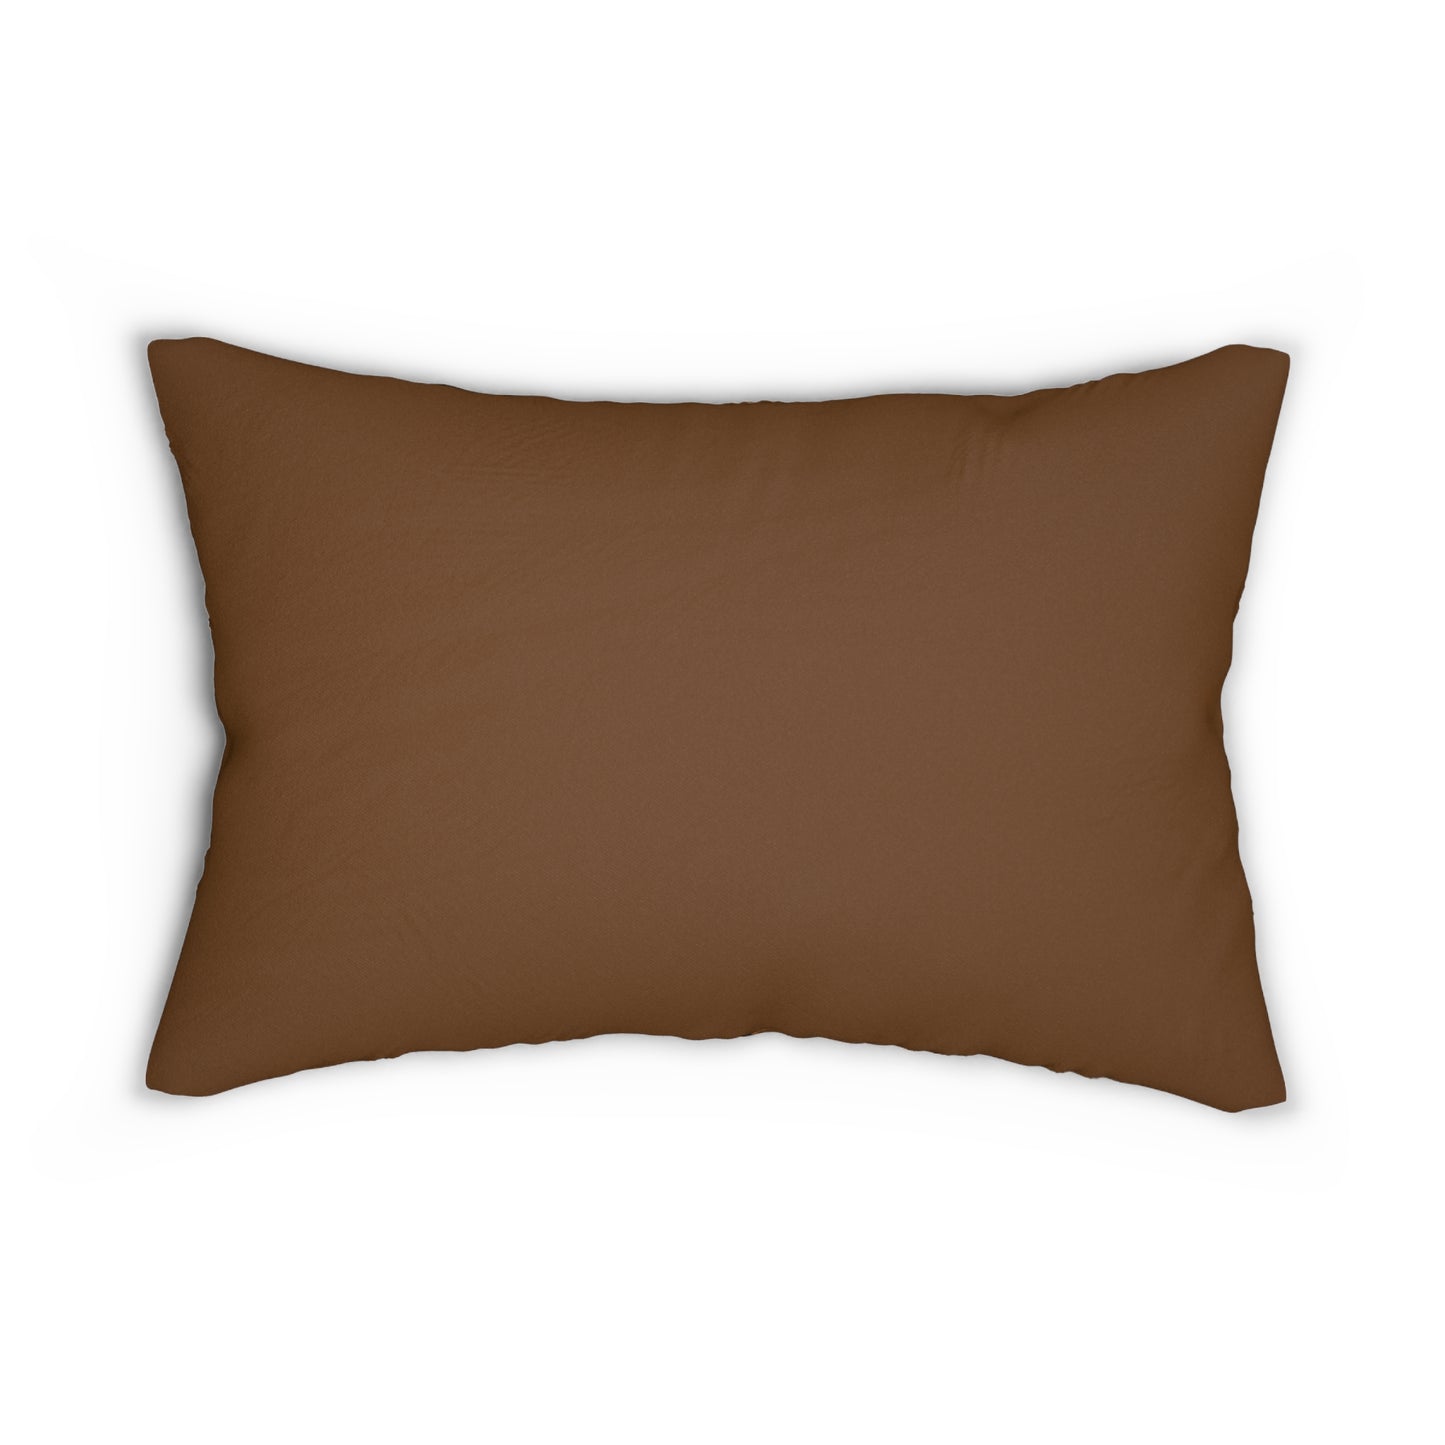 Almohada decorativa marrón con estampado animal (doble)